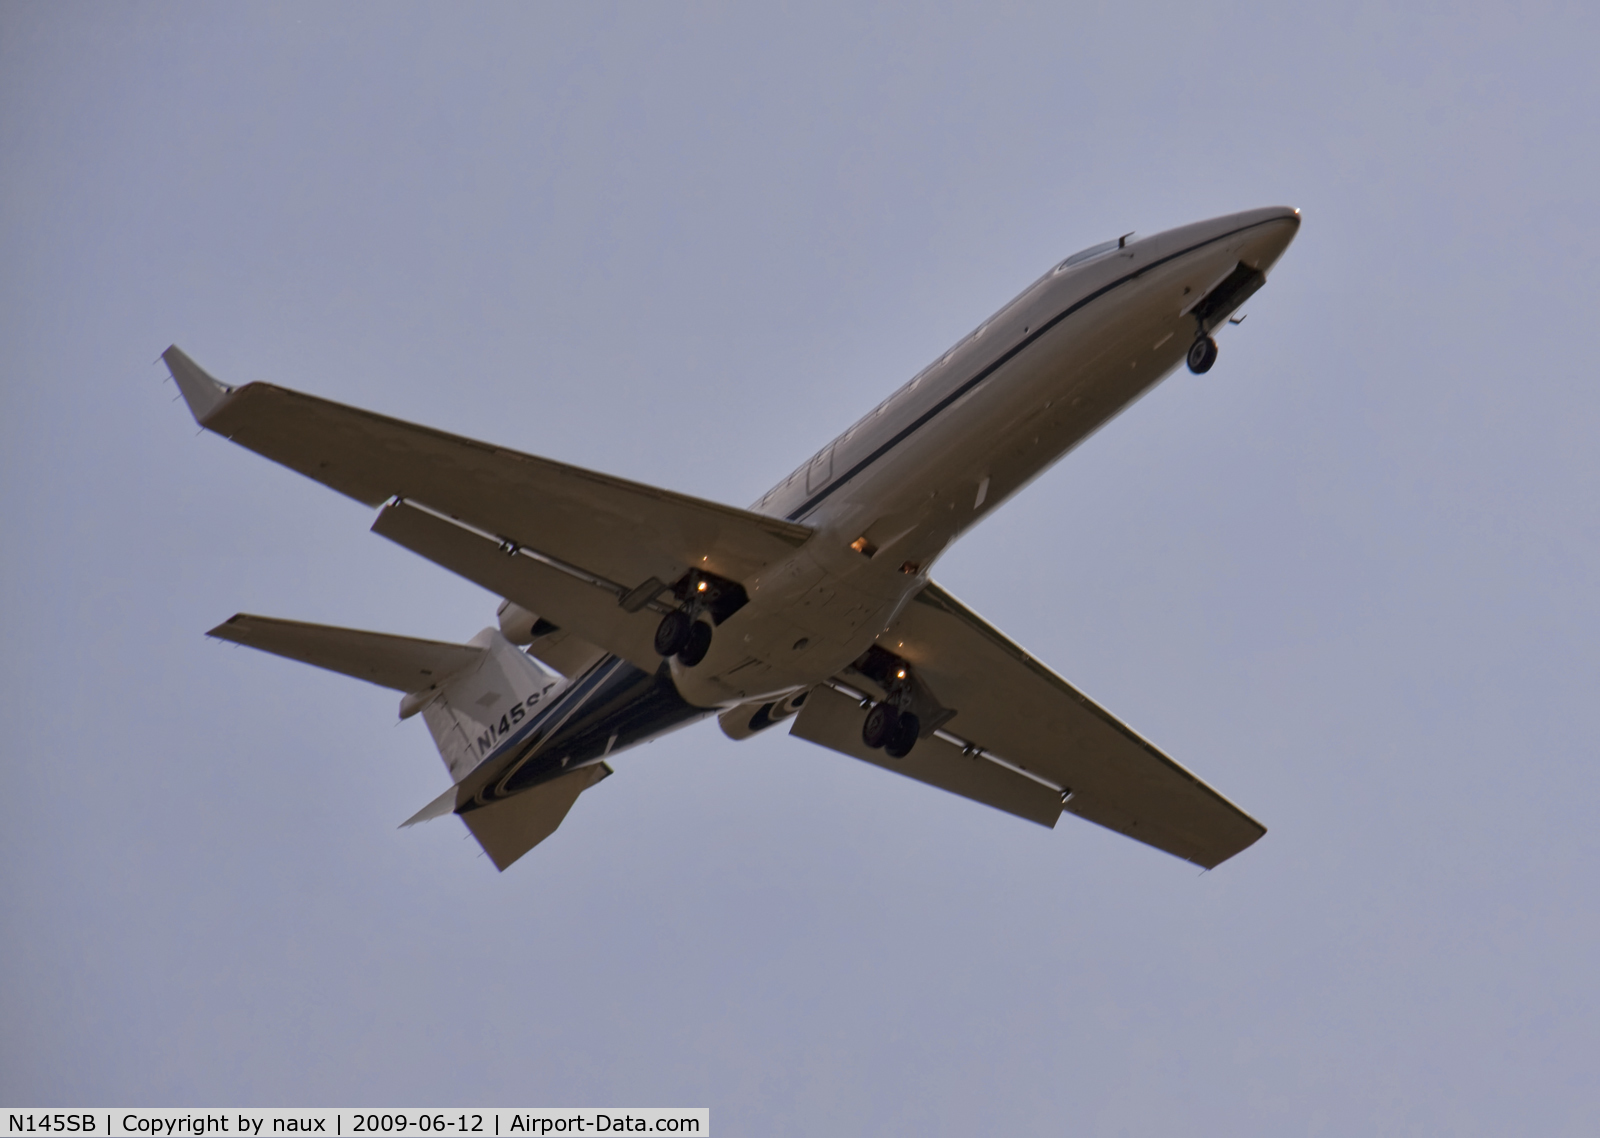 N145SB, 2001 Learjet 45 C/N 142, Jet